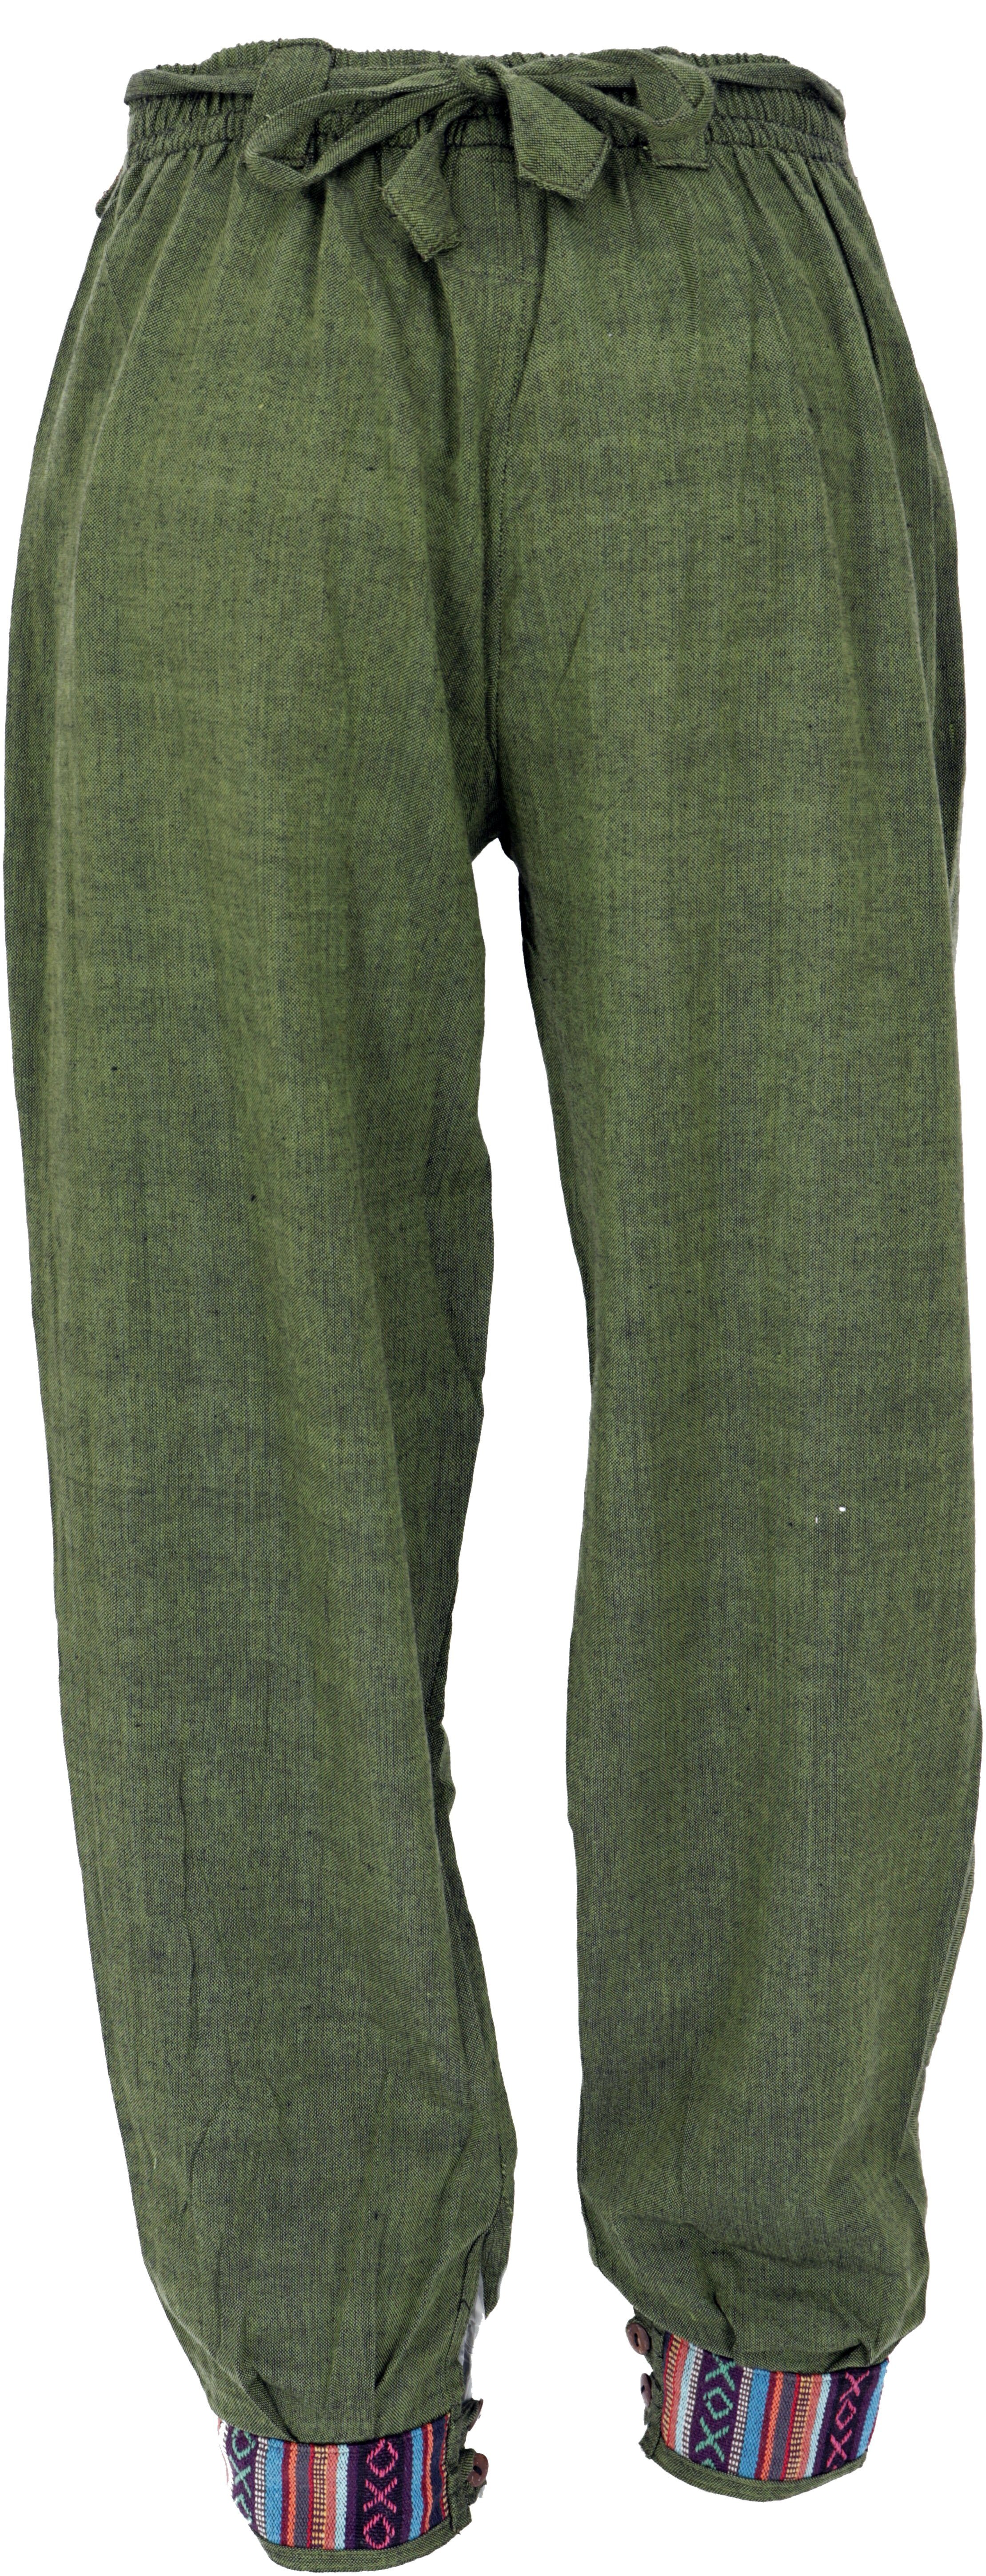 und.. olivgrün Relaxhose Style, Bekleidung Bund Guru-Shop Pluderhose mit breitem Muckhose, alternative Ethno